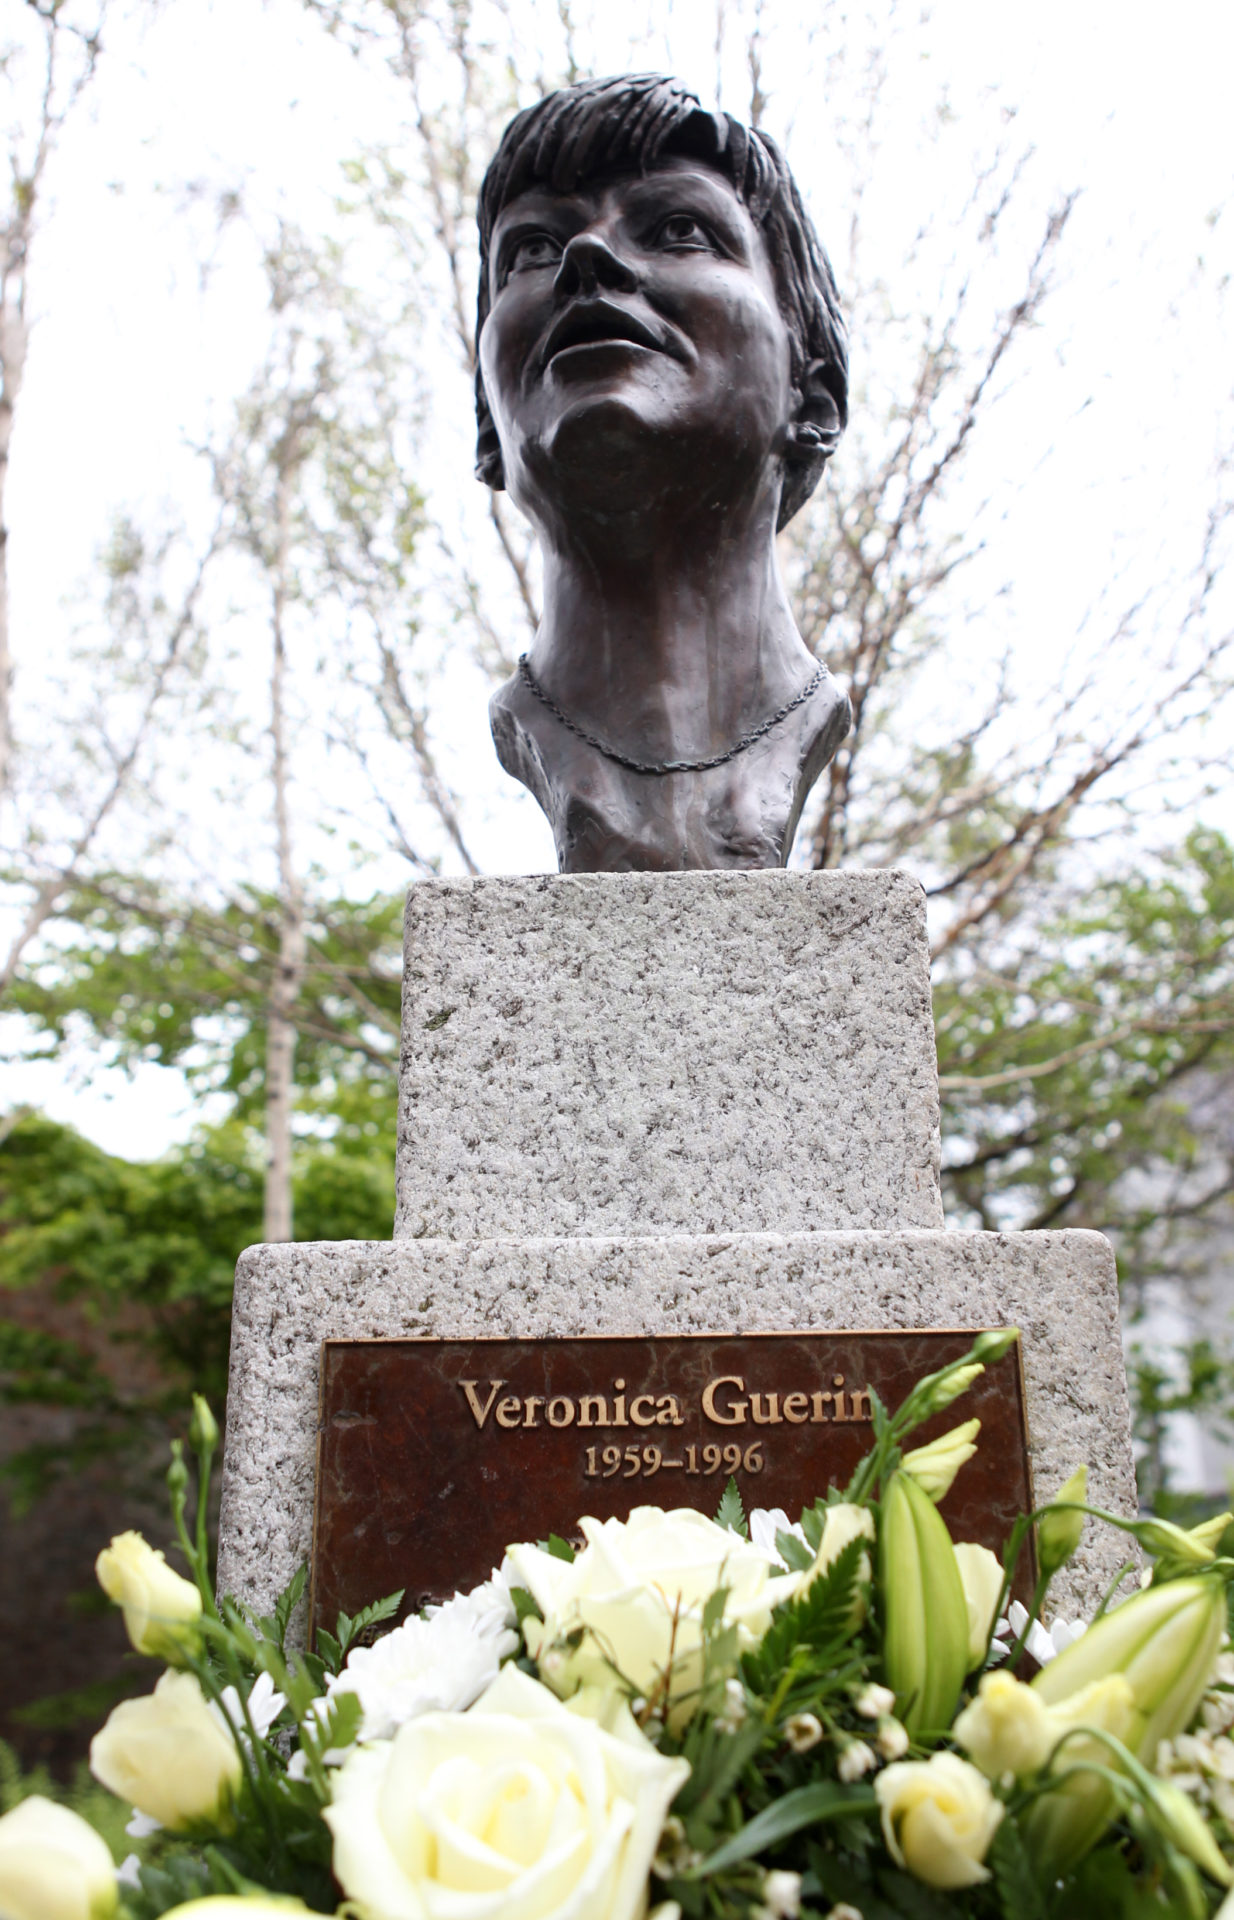 The Veronica Guerin memorial in Dublin Castle